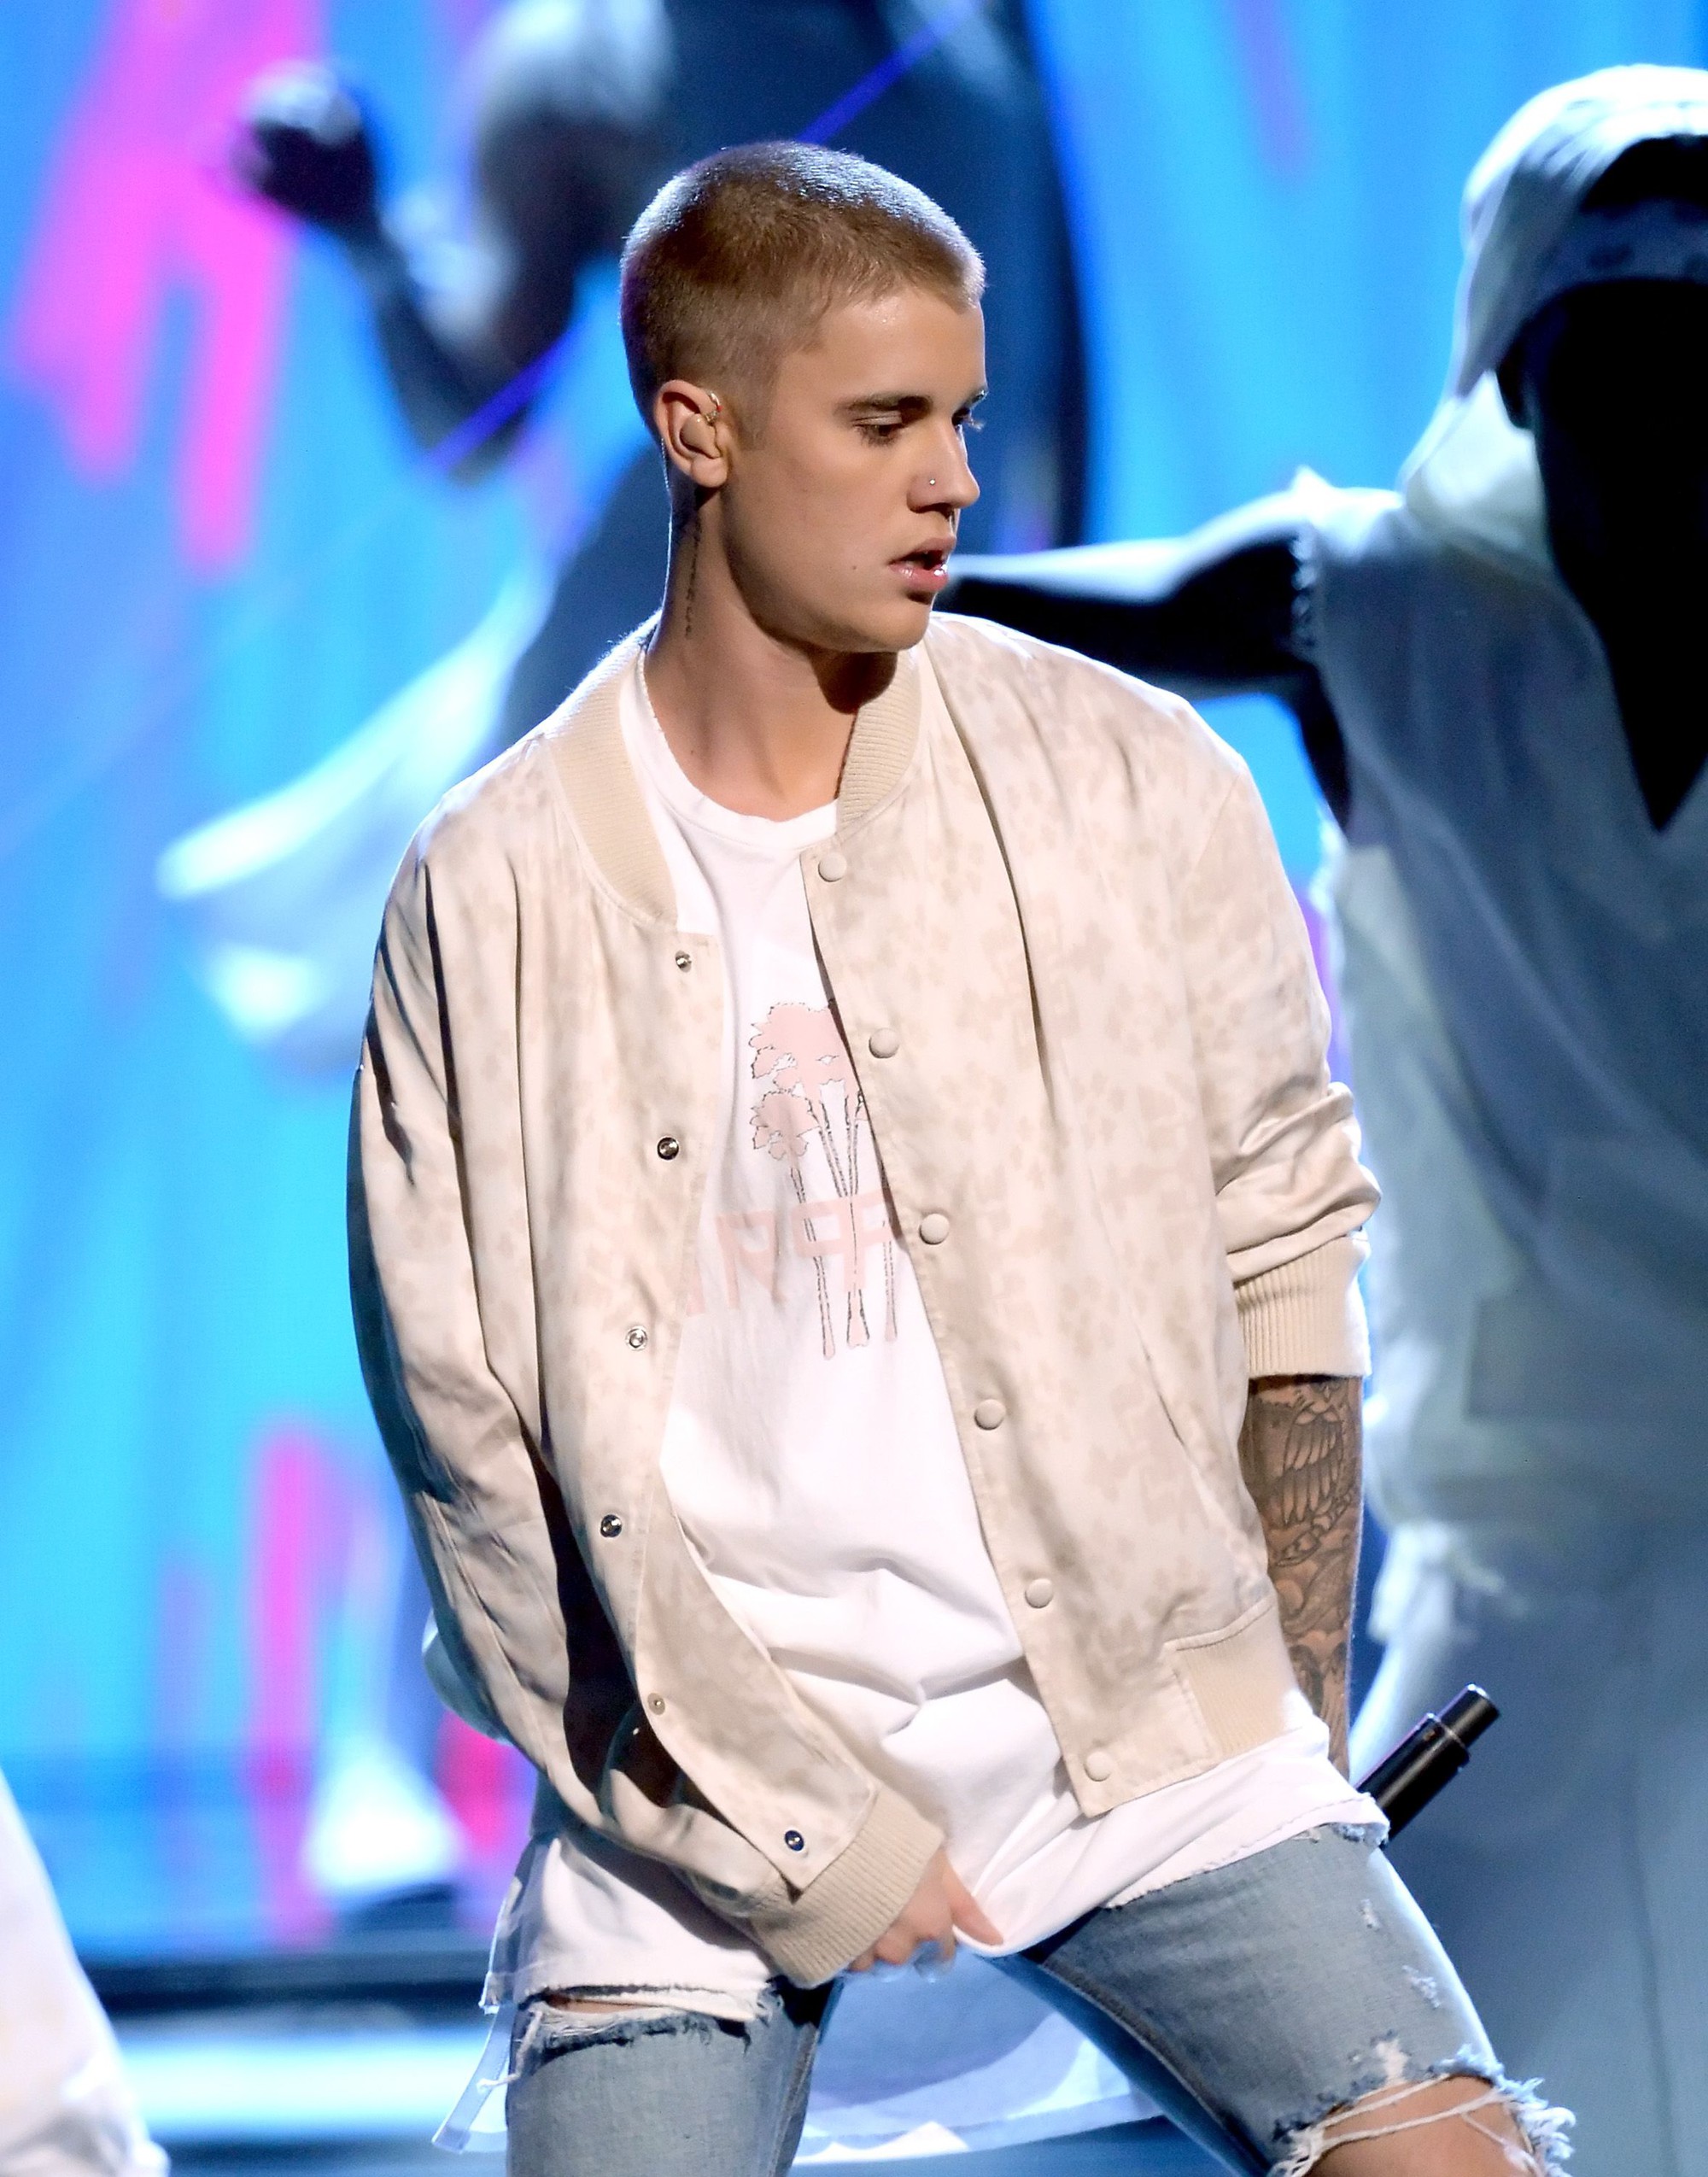 Tạm biệt Justin Bieber đầu bù tóc rối đây mới là hình ảnh chững chạc nhất  của anh chàng